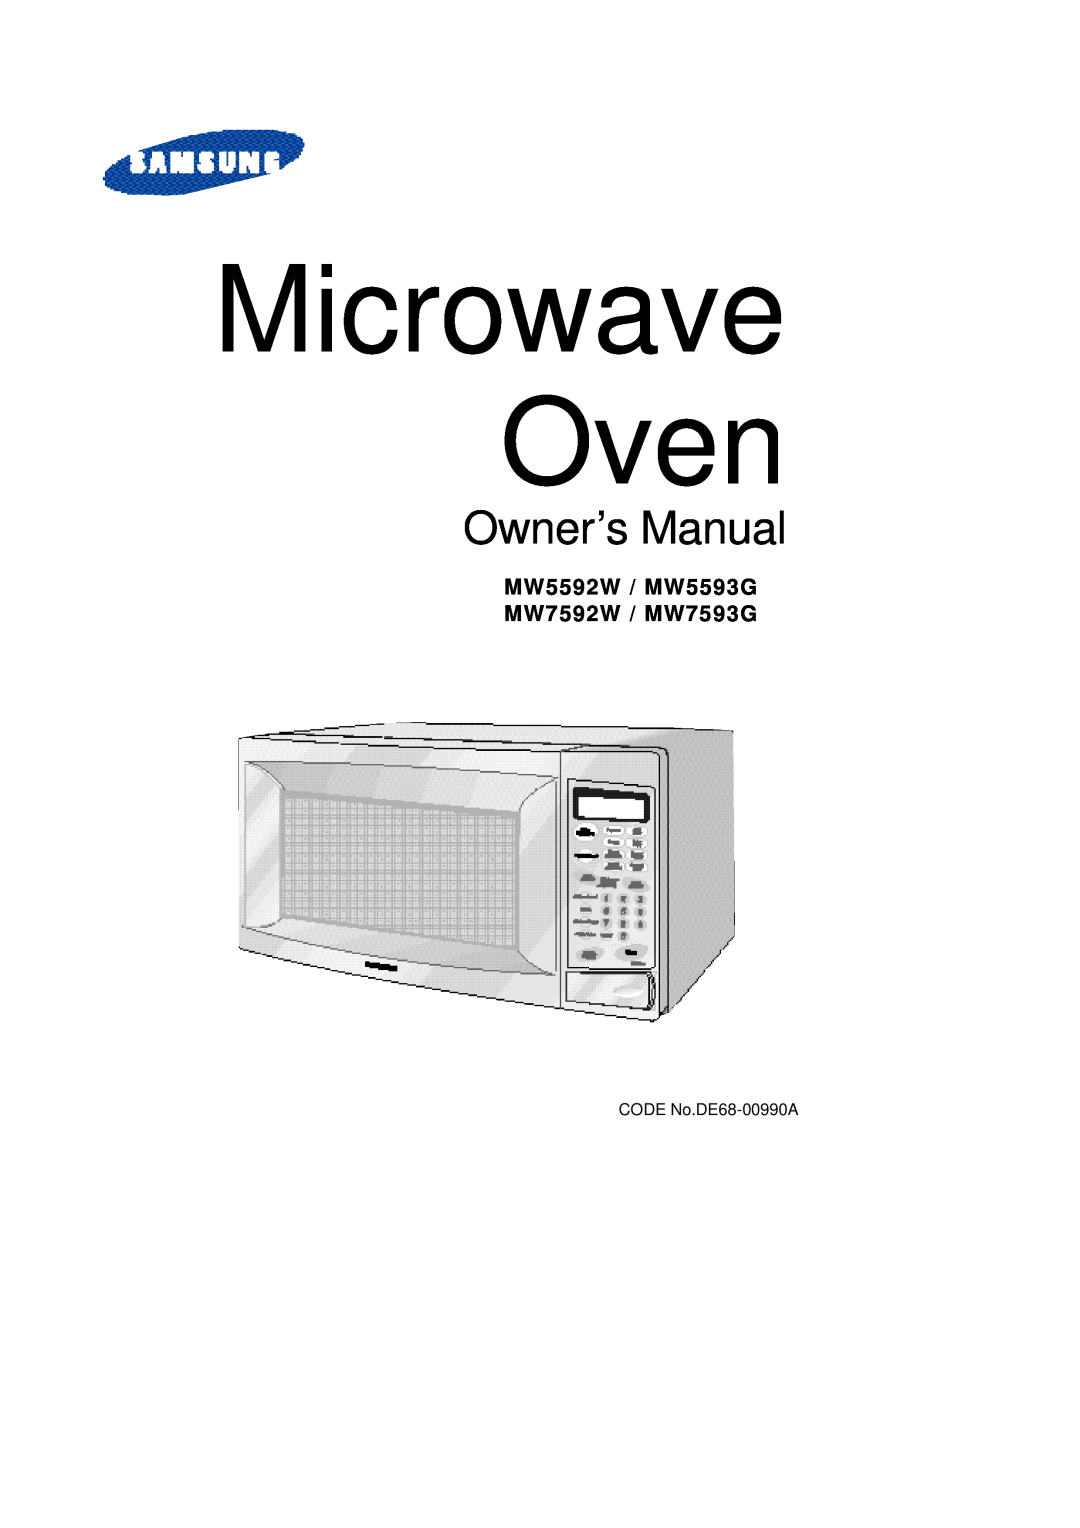 Samsung manual Owner’s Manual, MW5592W / MW5593G MW7592W / MW7593G, Microwave Oven 